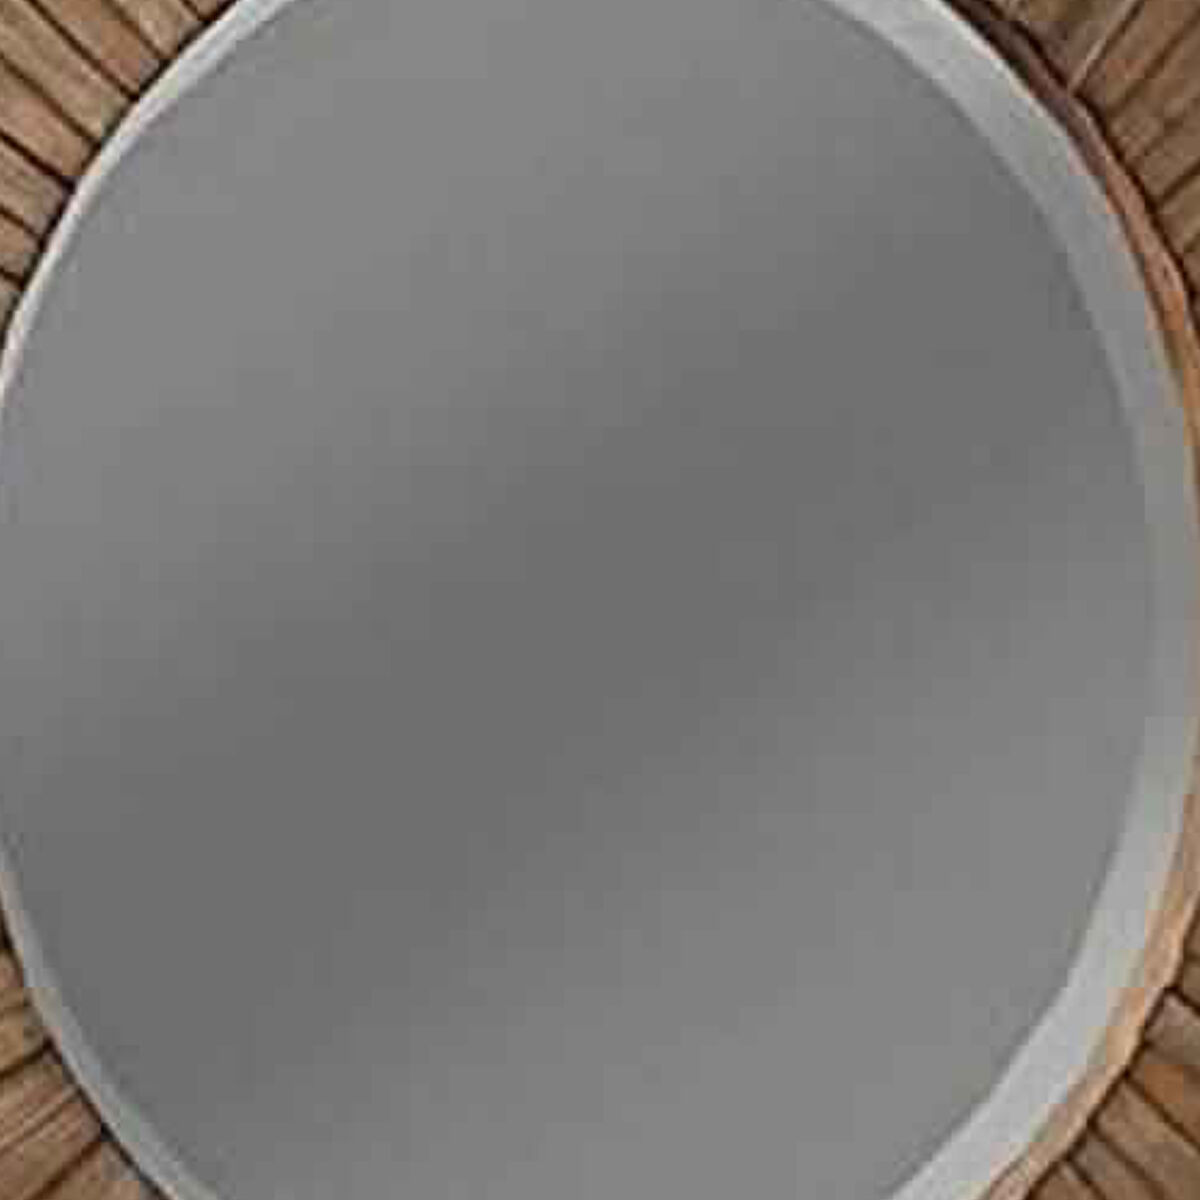 Transitional Sunburst Round Mirror with Wooden Frame, Brown